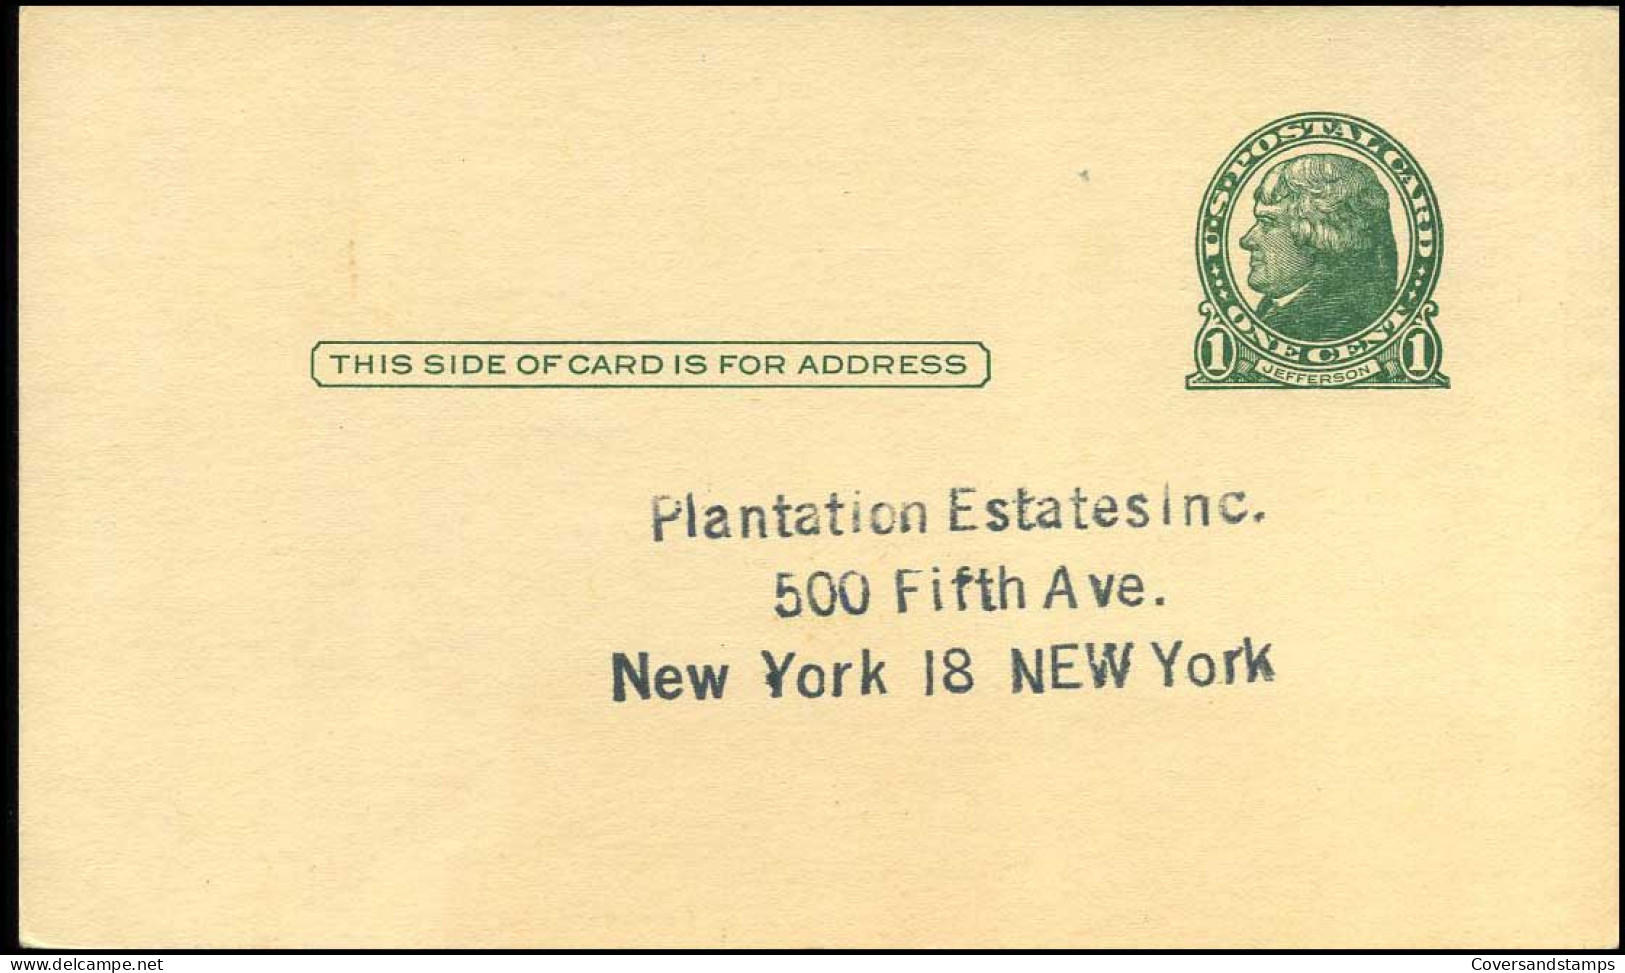 Postal Stationary - "Plantation Estates, New York" - 1941-60